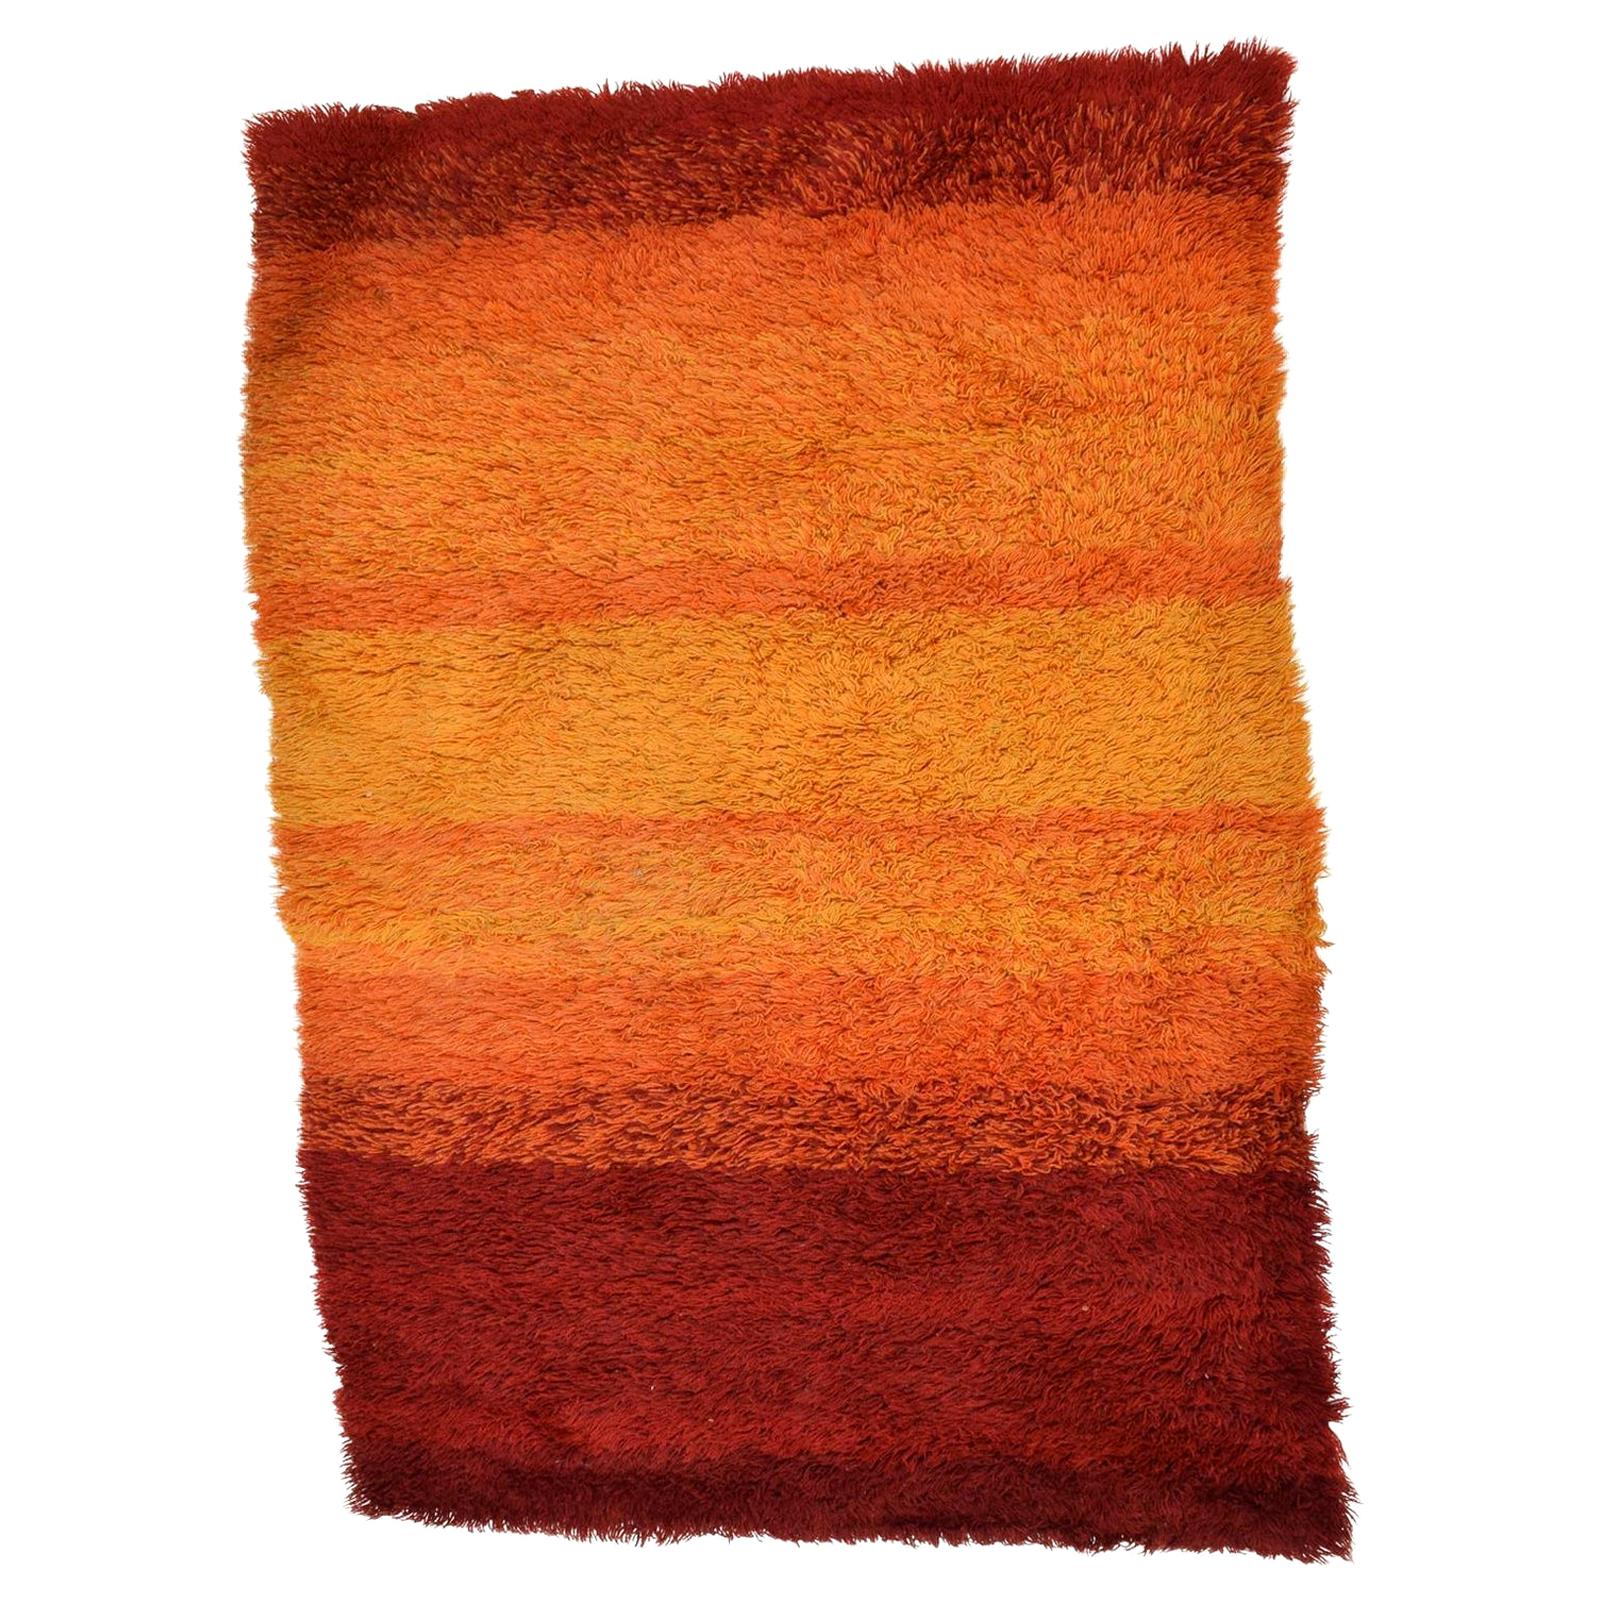 1960s Vibrant Orange Rya Rug Tapestry Scandinavian Modern Denmark